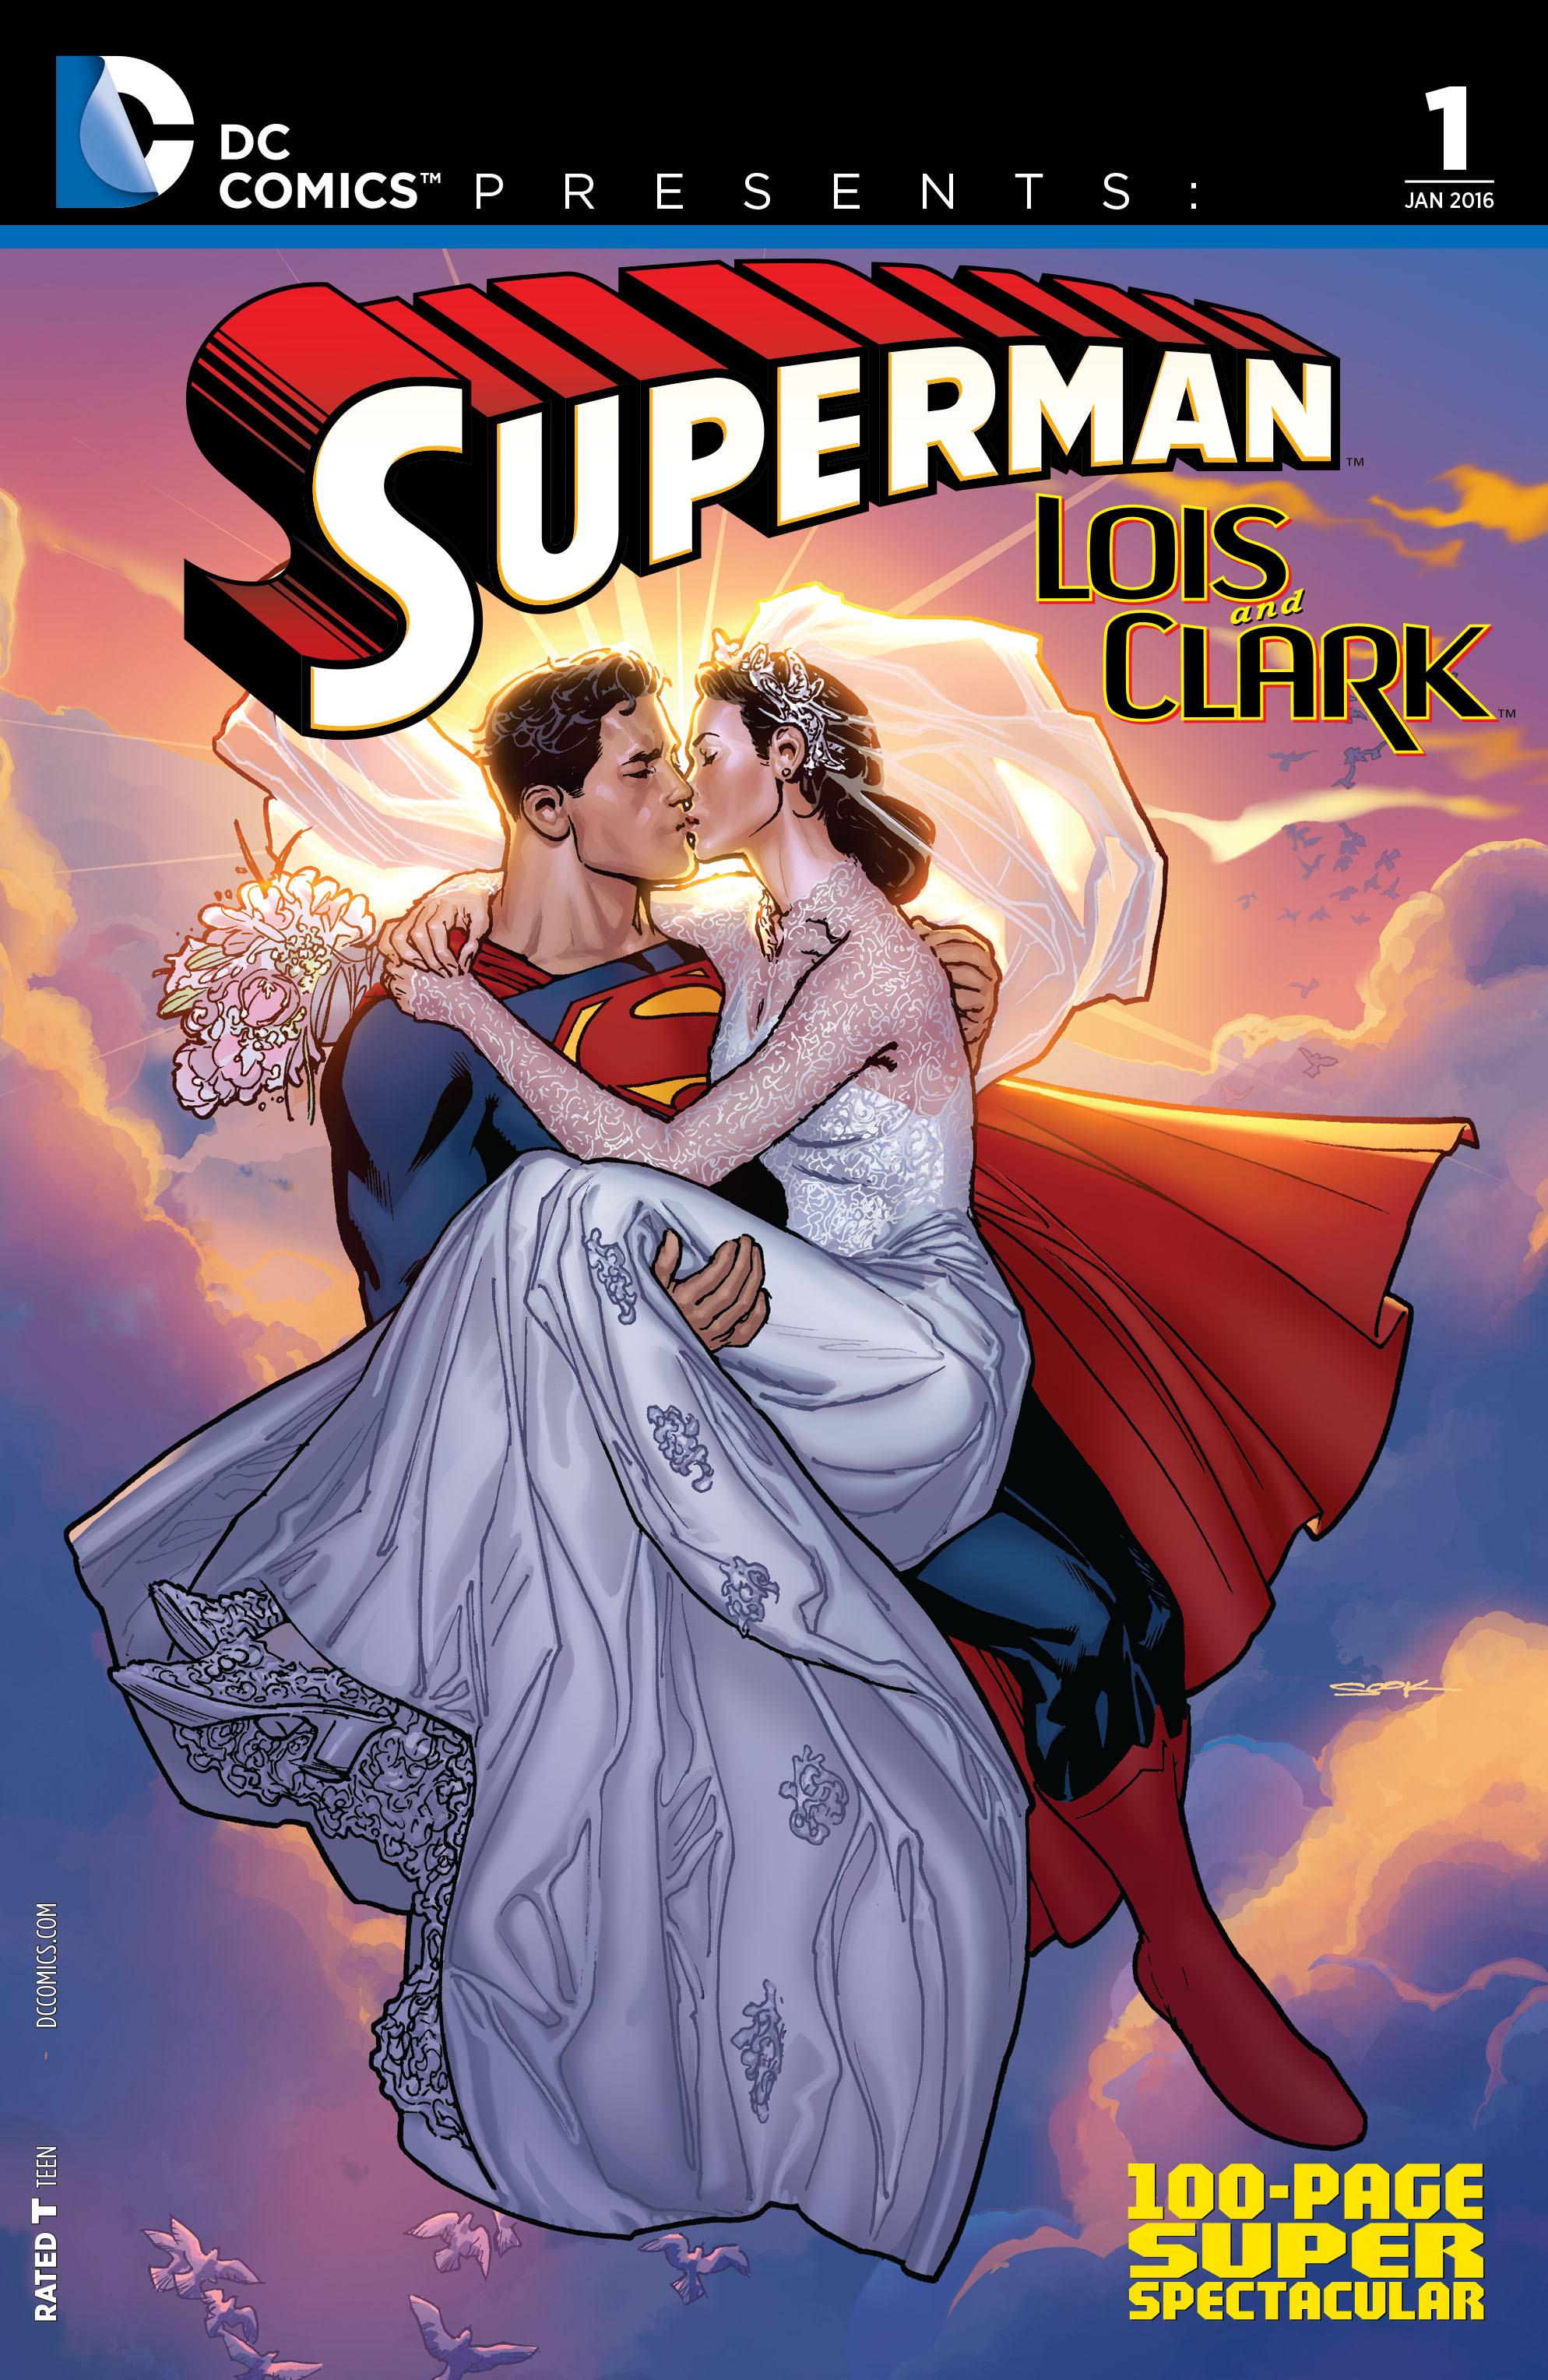 DC Comics Presents: Superman - Lois and Clark 100-Page Super Spectacular Vol. 1 #1